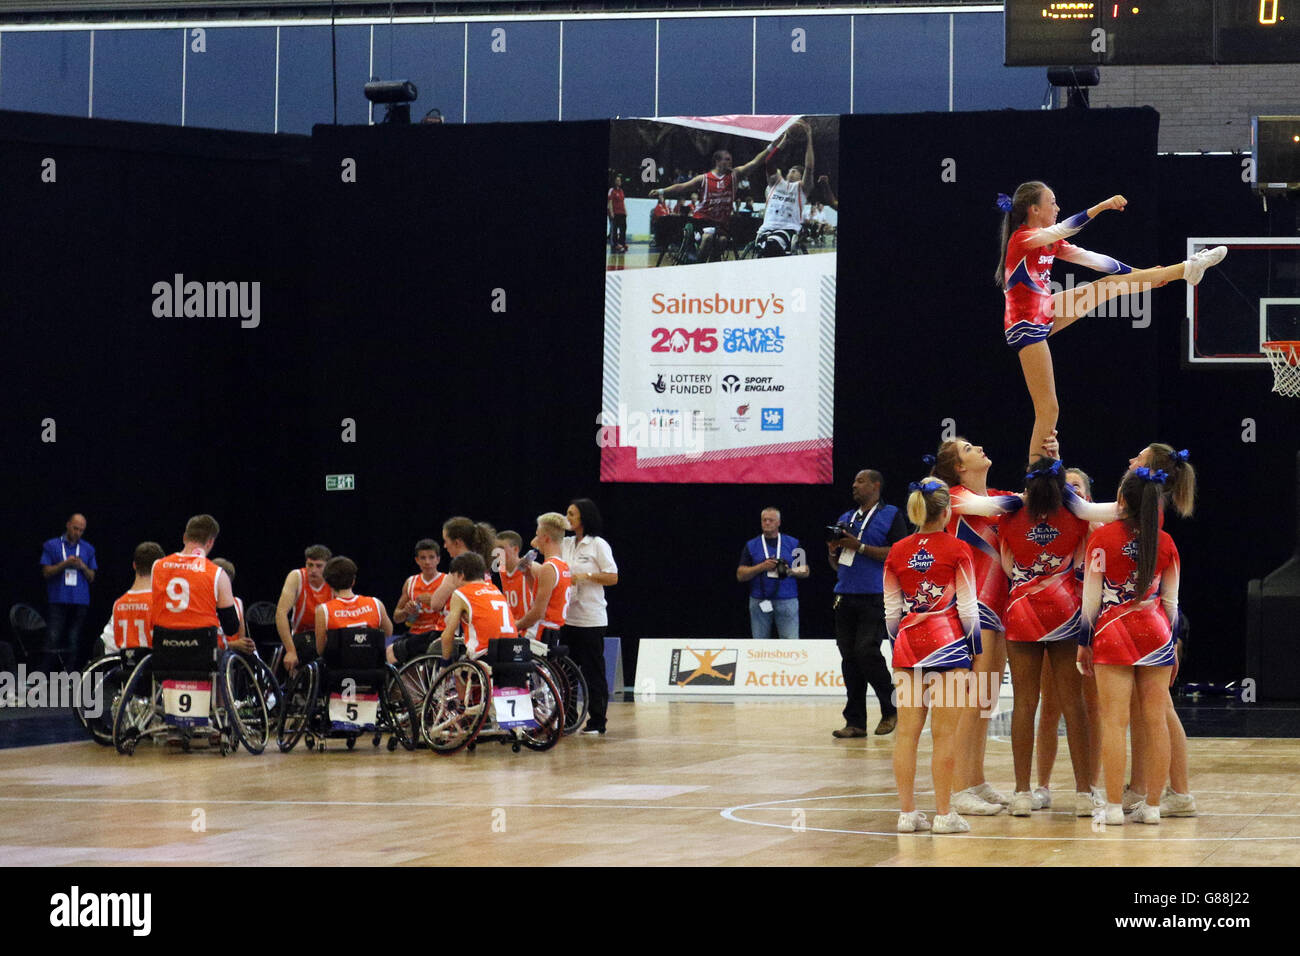 I cheerleader si esibiscono durante la metà dell'intervallo di tempo nella finale di basket su sedia a rotelle ai Giochi scolastici 2015 di Sainsbury presso la Regional Arena di Manchester. Foto Stock